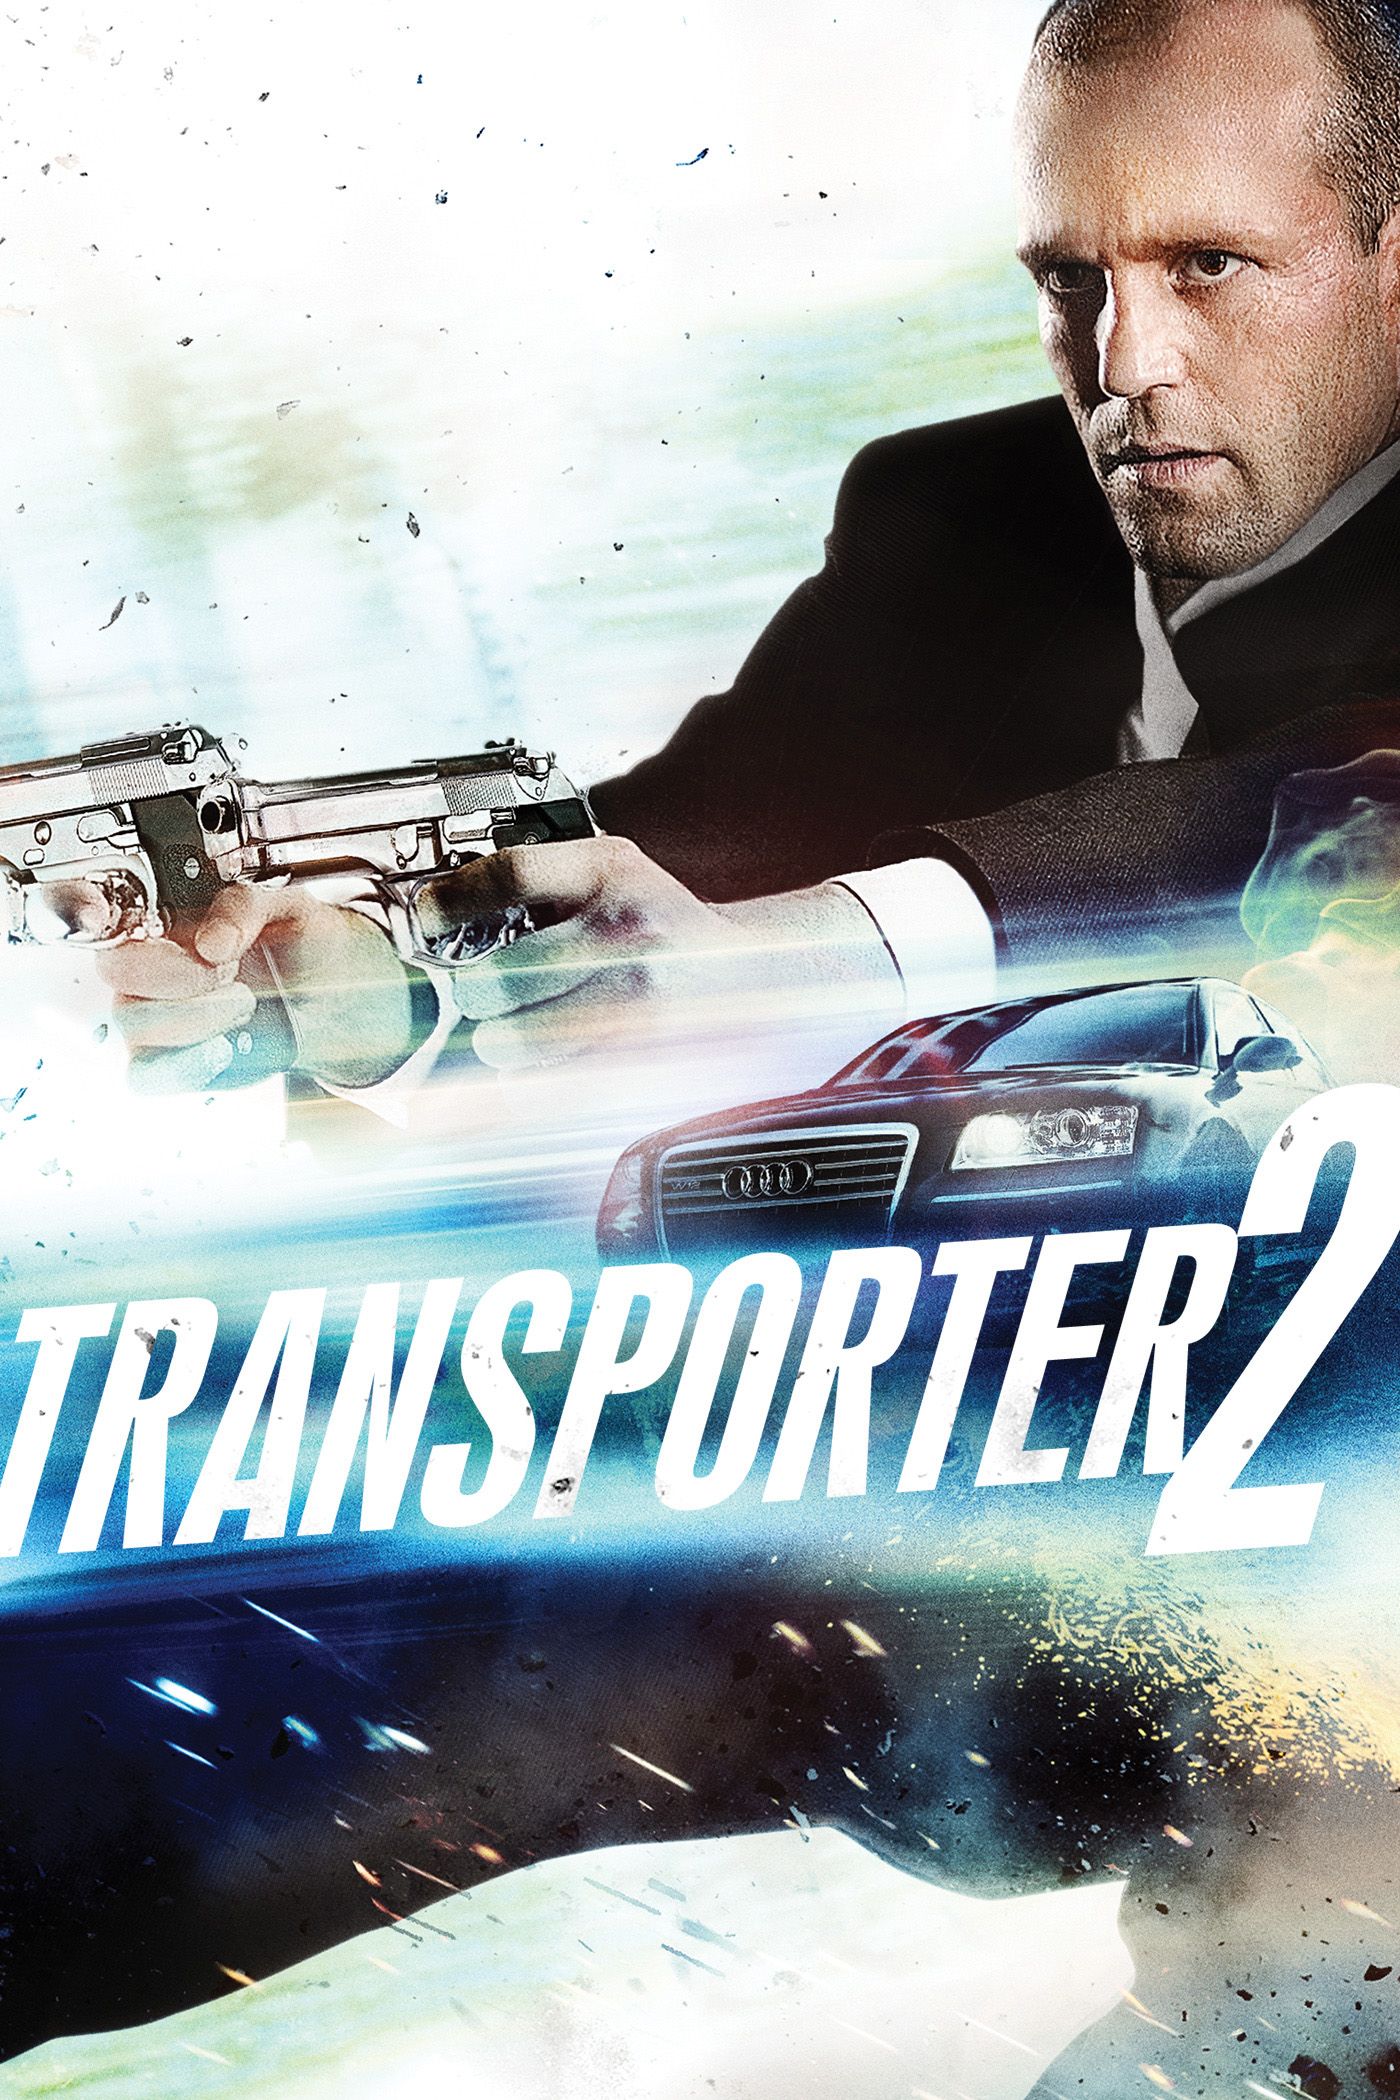 Transporter 2, Full Movie